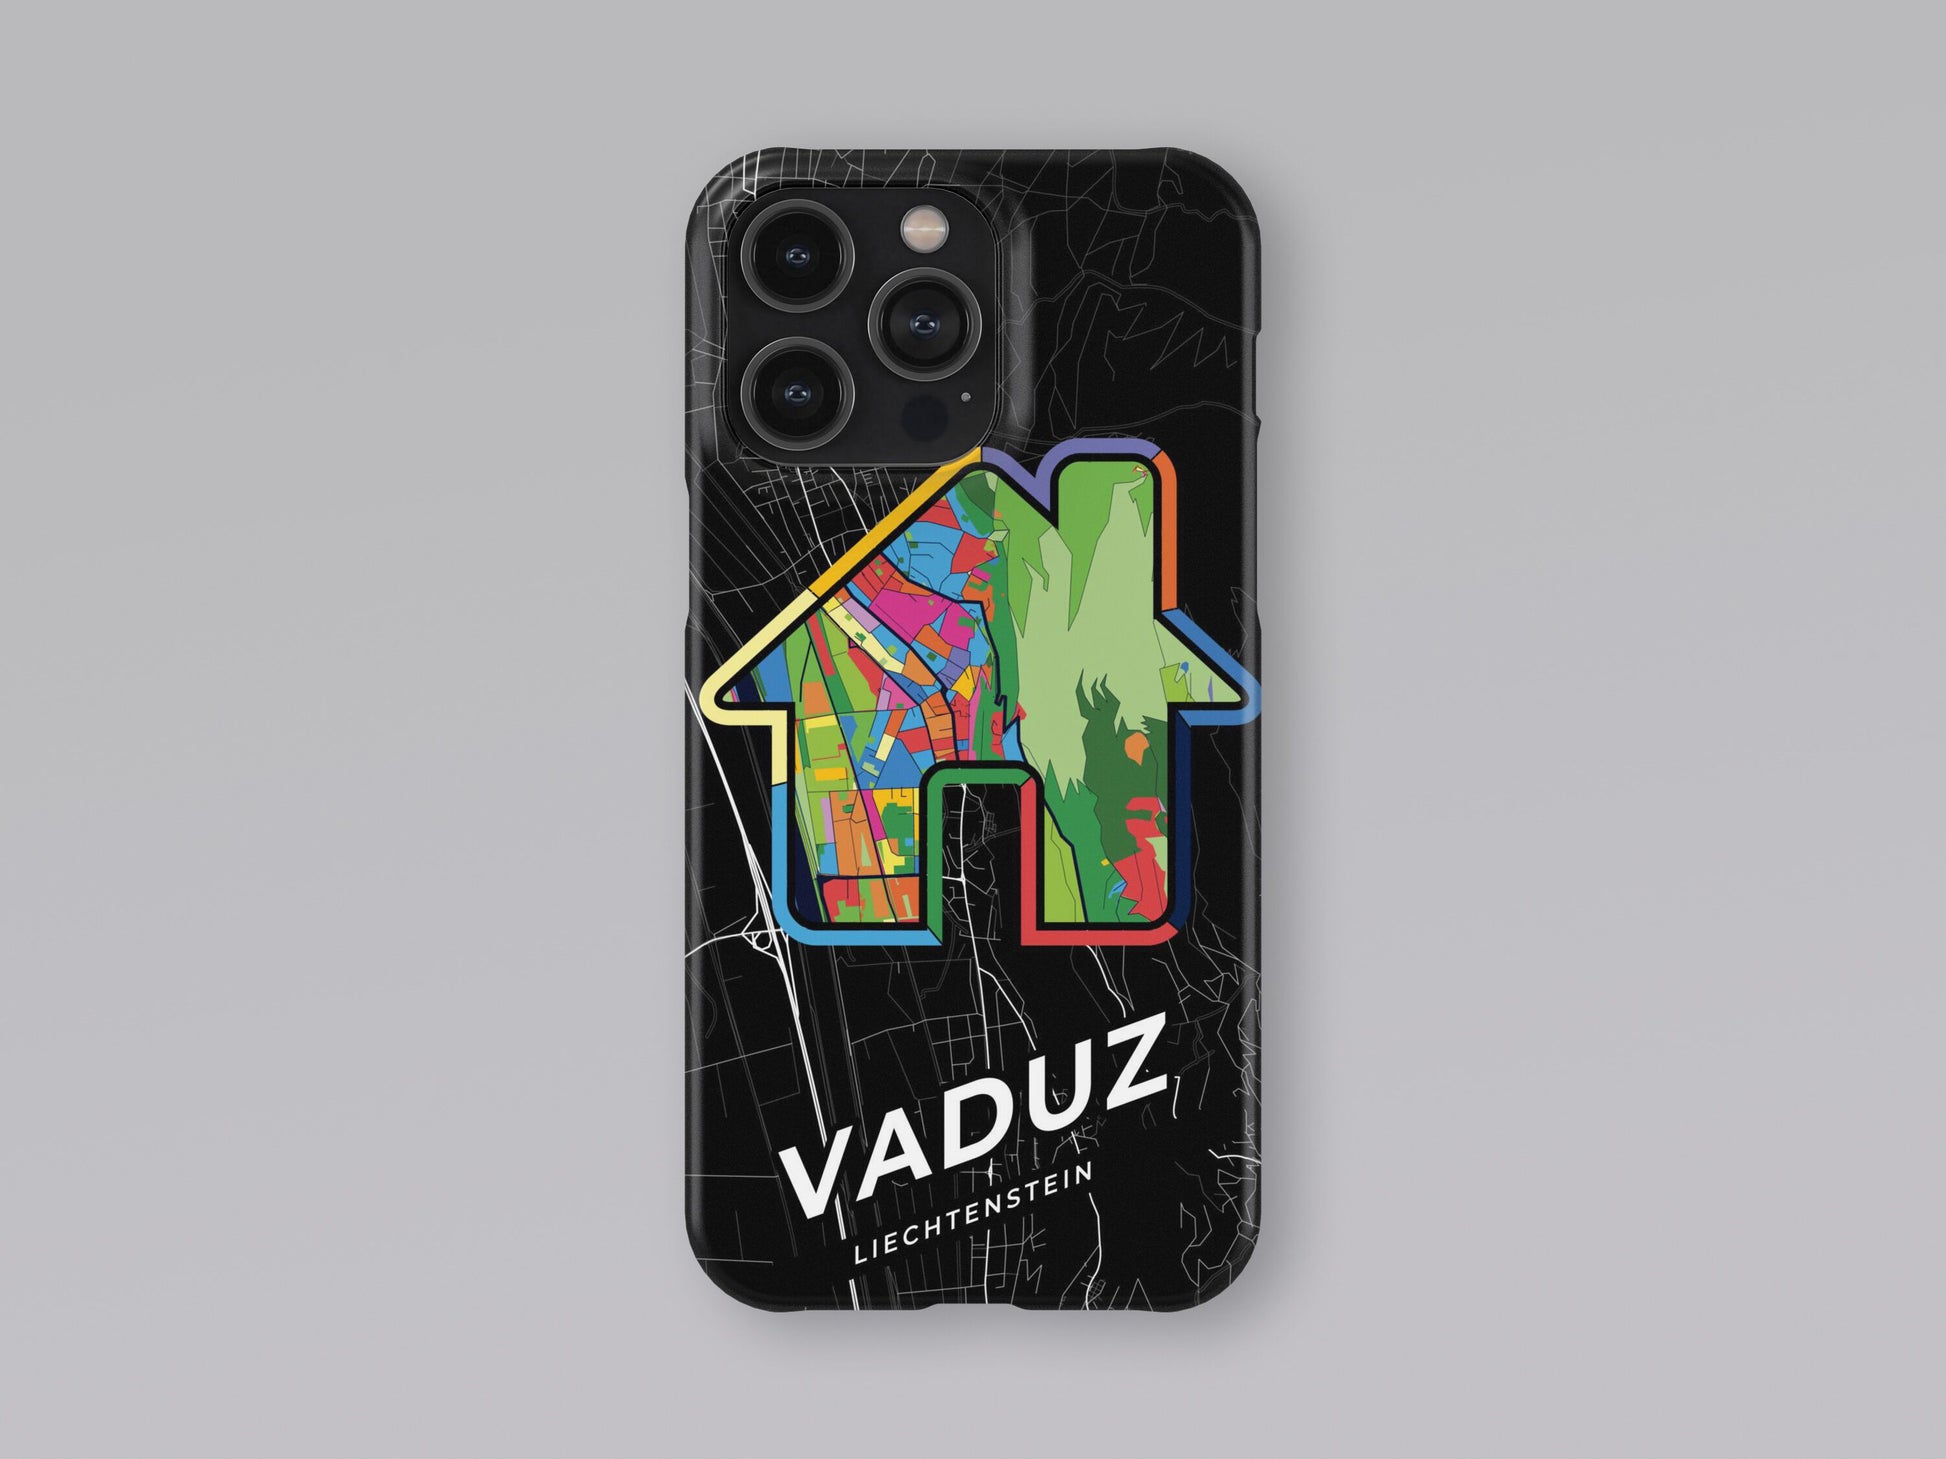 Vaduz Liechtenstein slim phone case with colorful icon 3